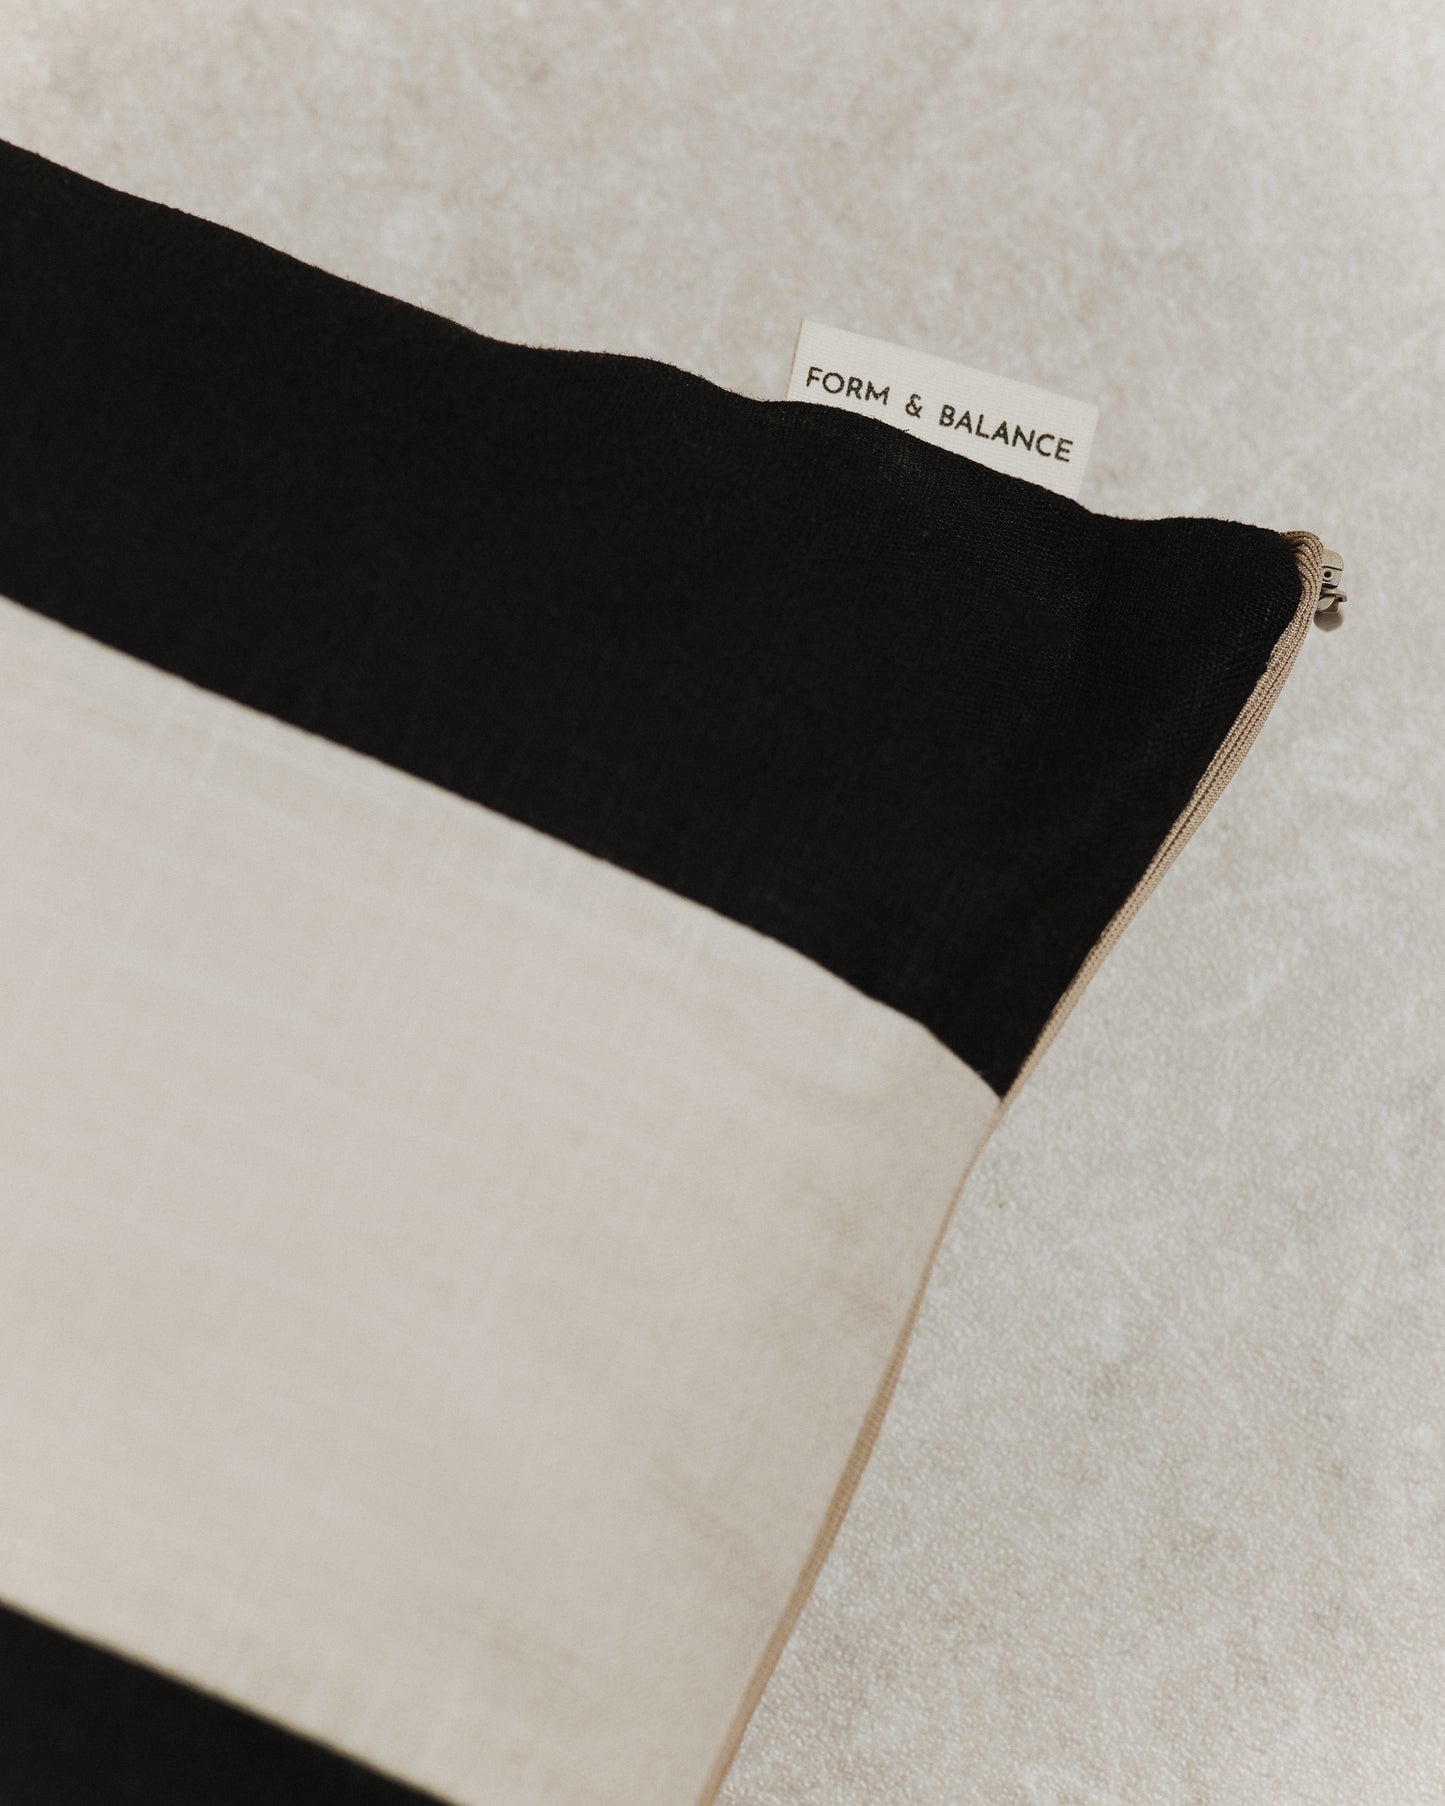 Maxi Stripe Cushion Cover | Black and Ecru